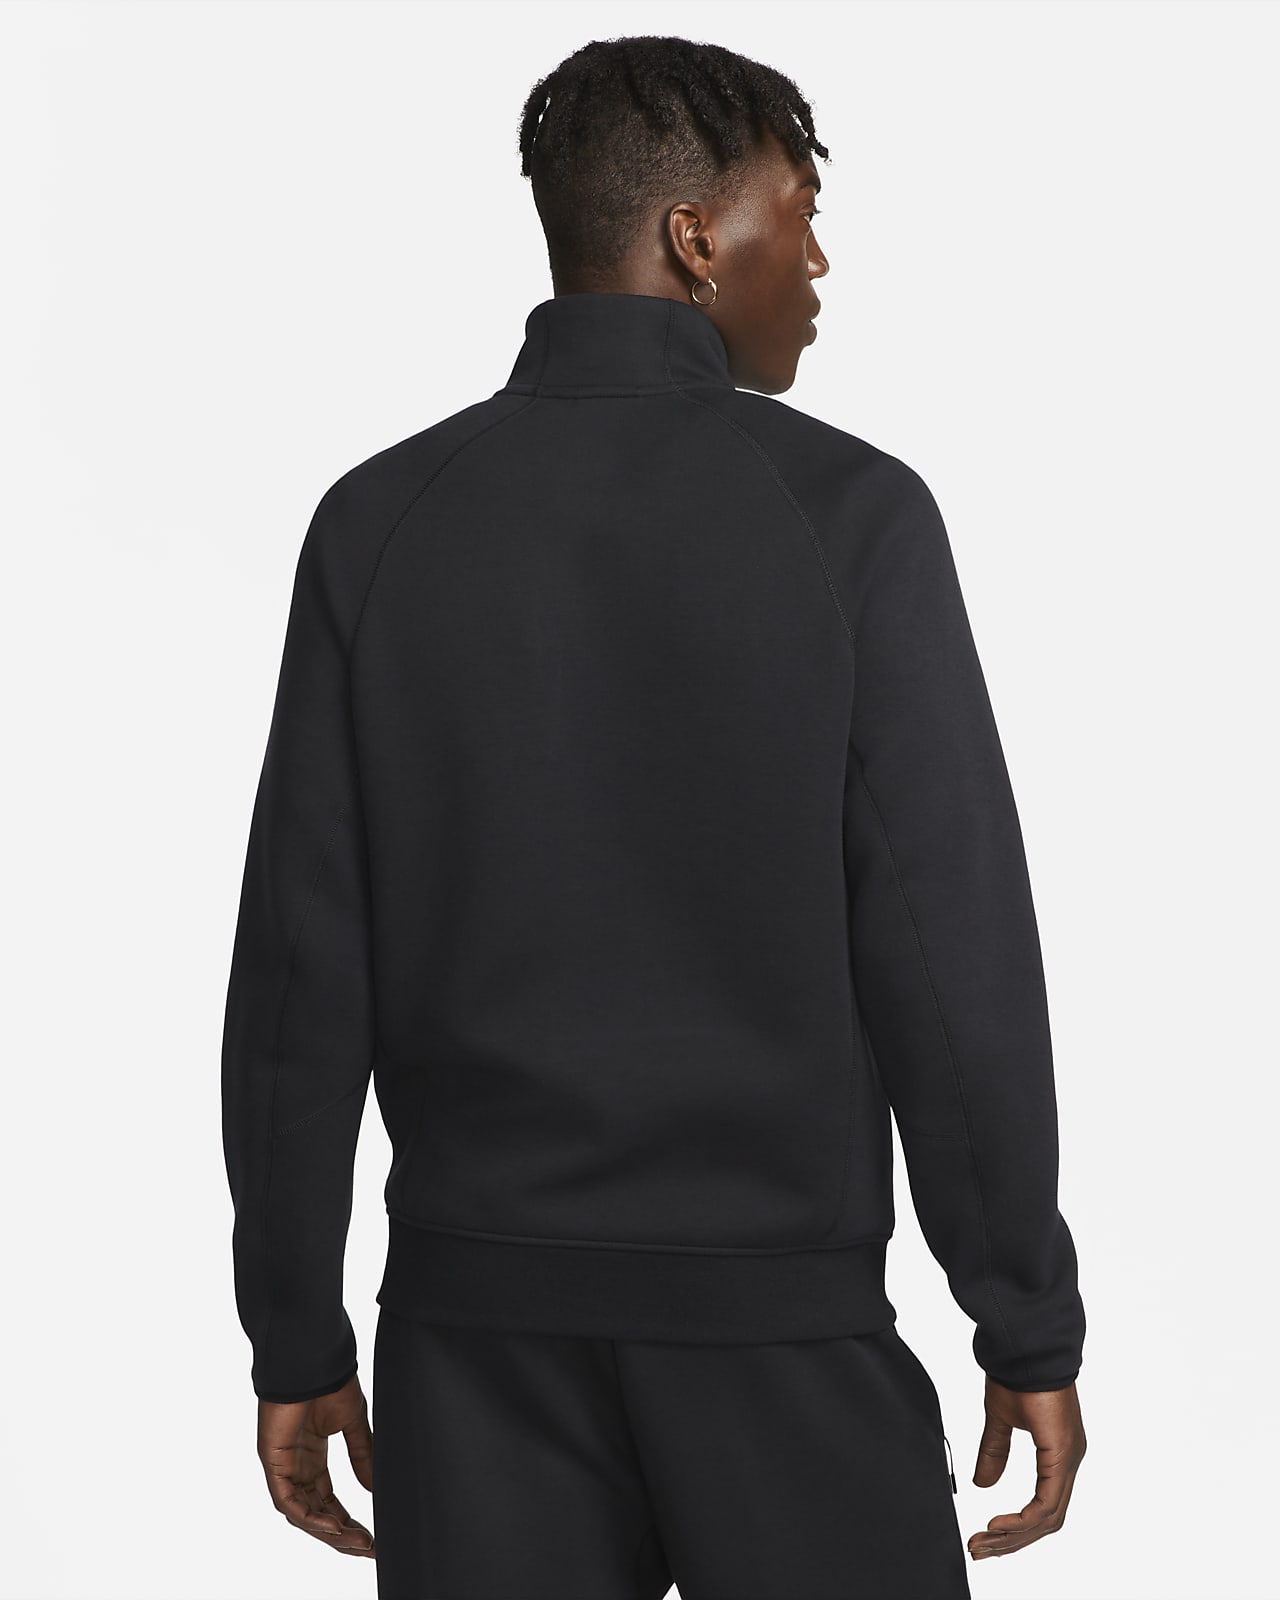 Nike Sportswear Tech Fleece Men's 1/2-Zip Sweatshirt. Nike LU